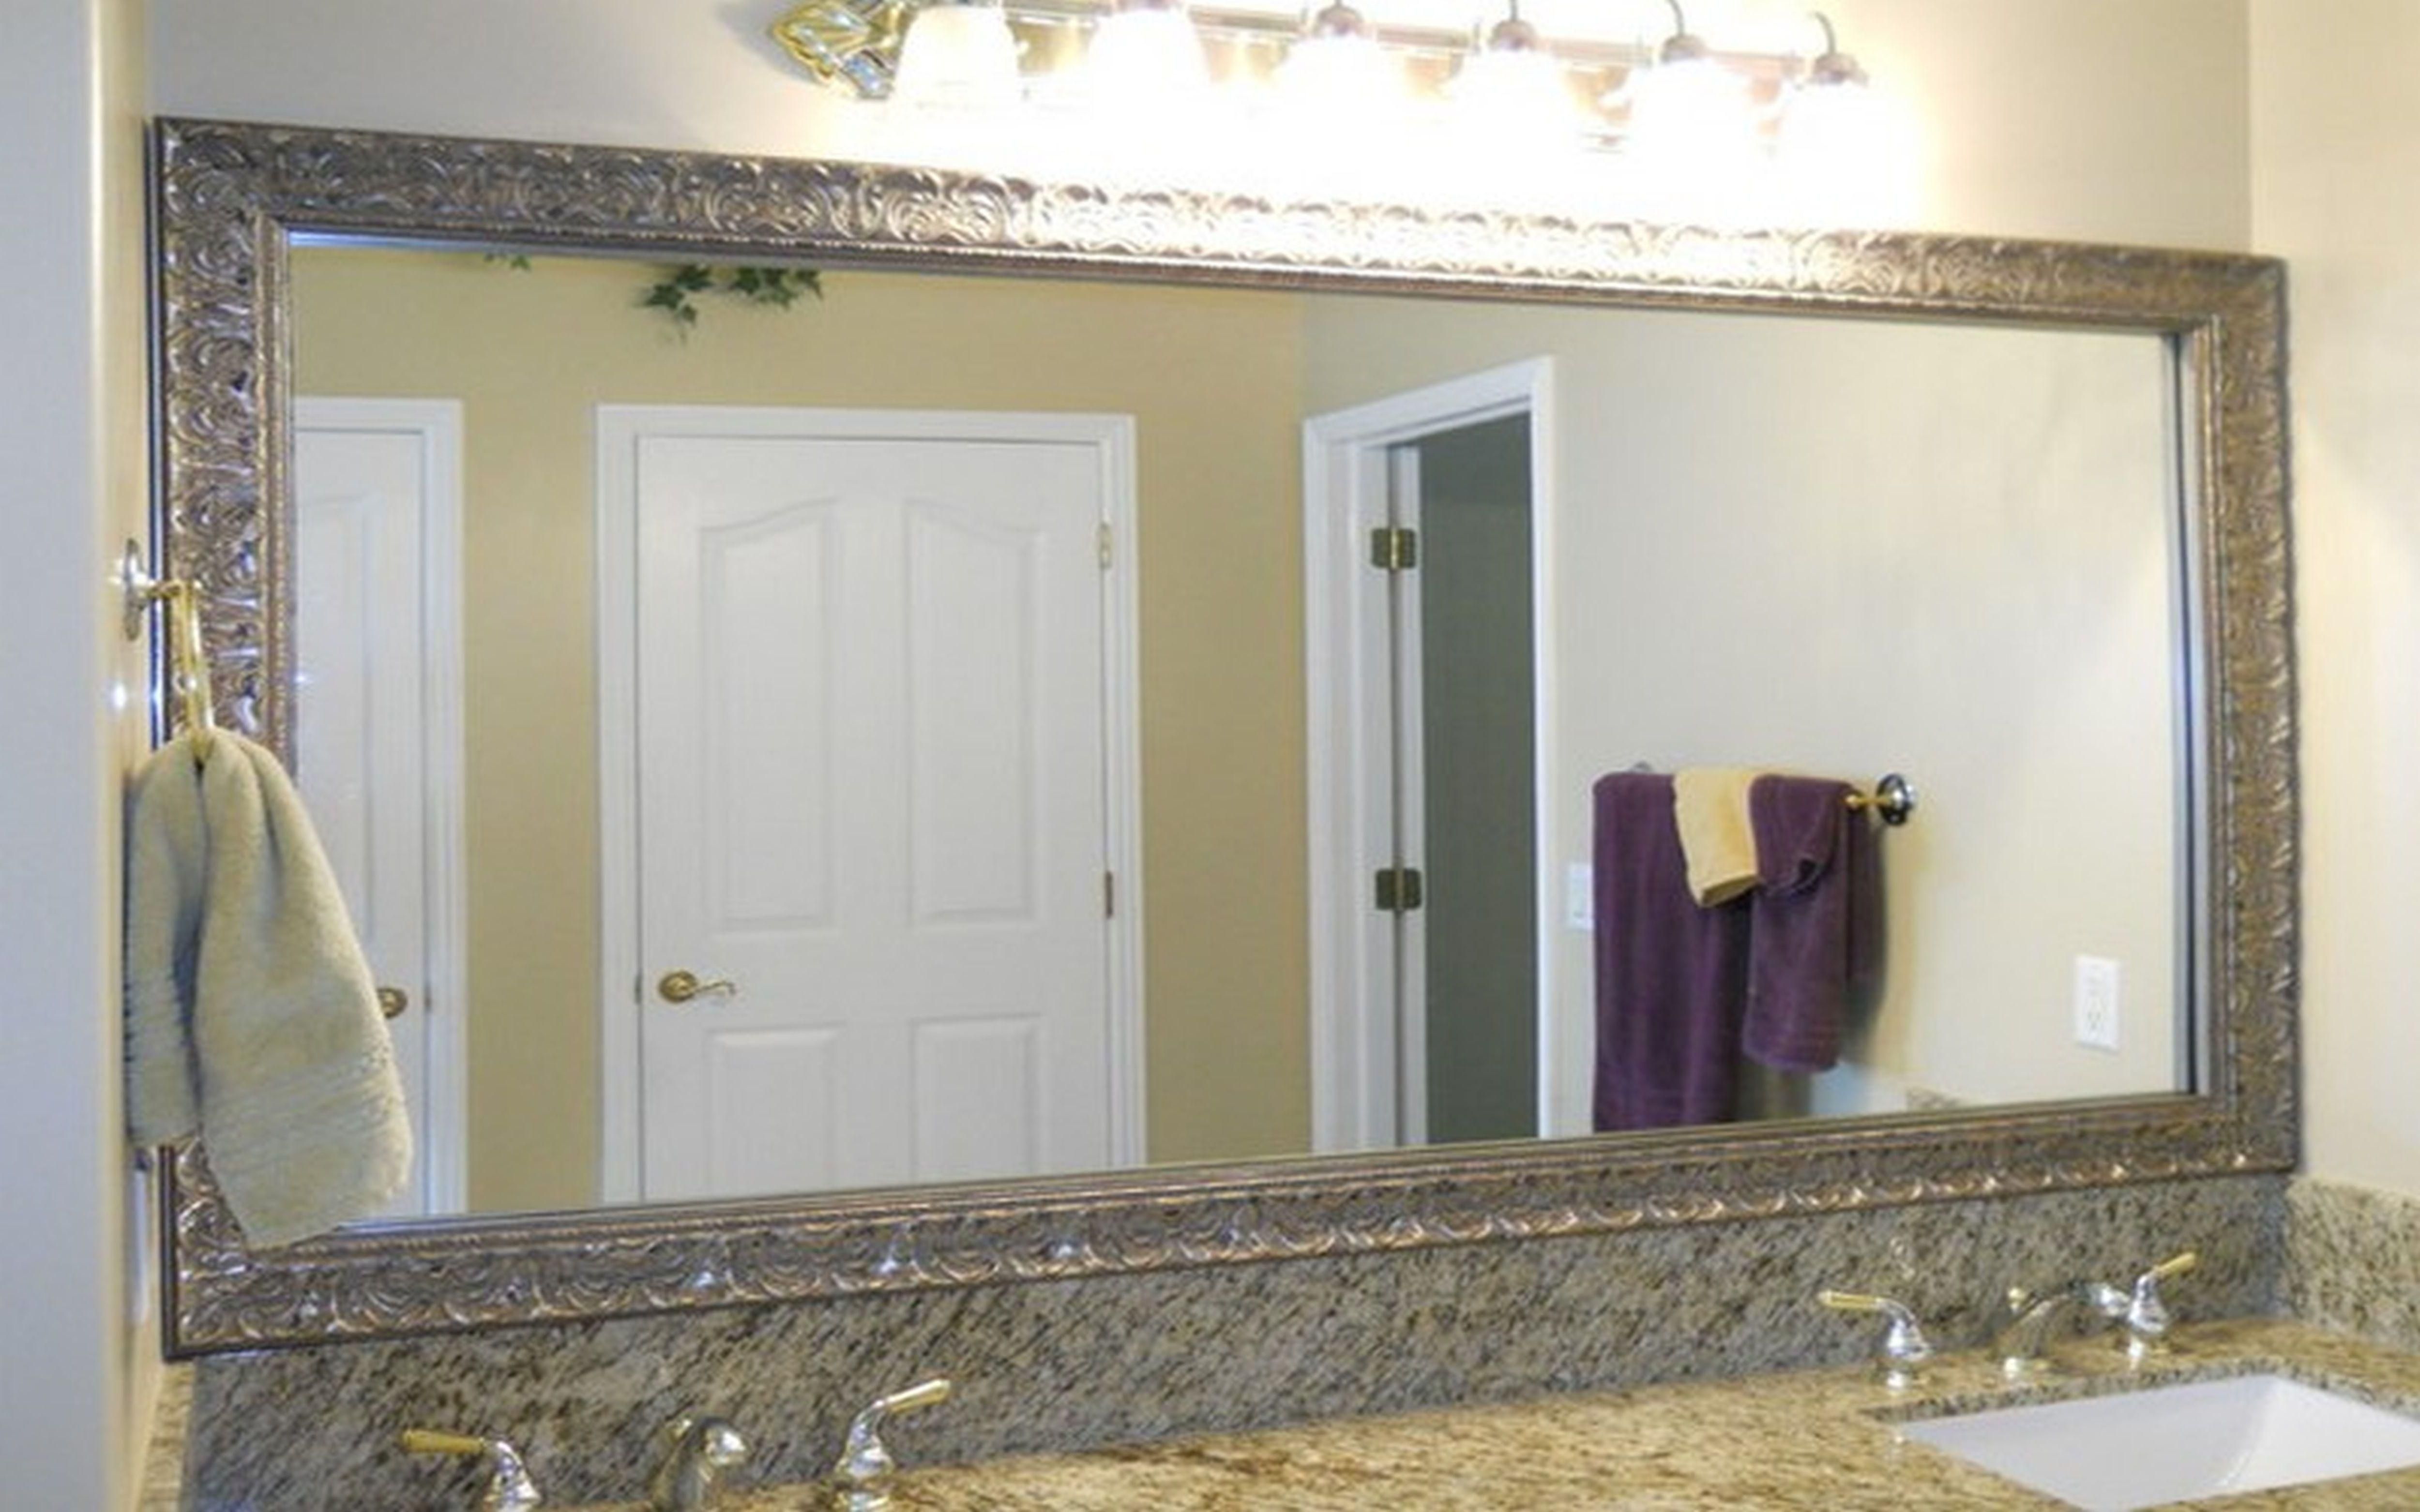 Зеркало в рамке в ванной. Зеркало в ванную. Зеркало в раме для ванной. Зеркало в багете для ванной комнаты. Зеркало с рамкой в ванную комнату.